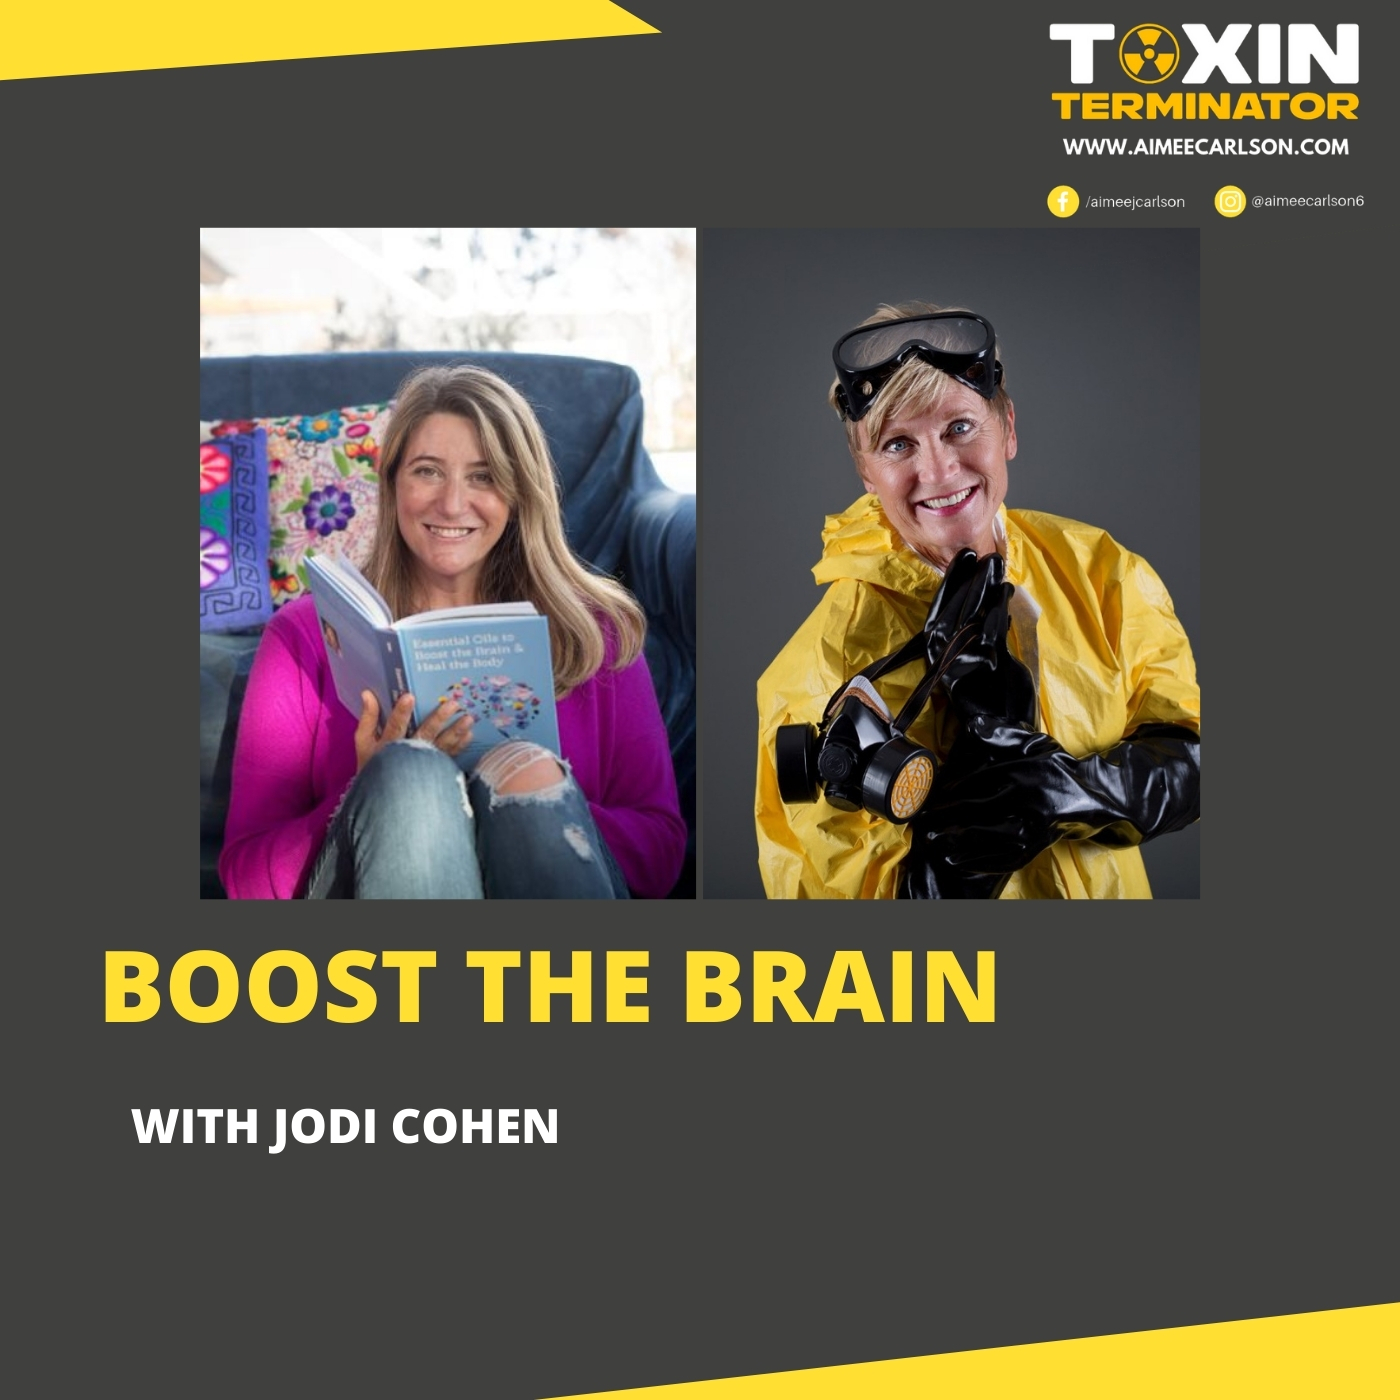 Boost the Brain with Jodi Cohen